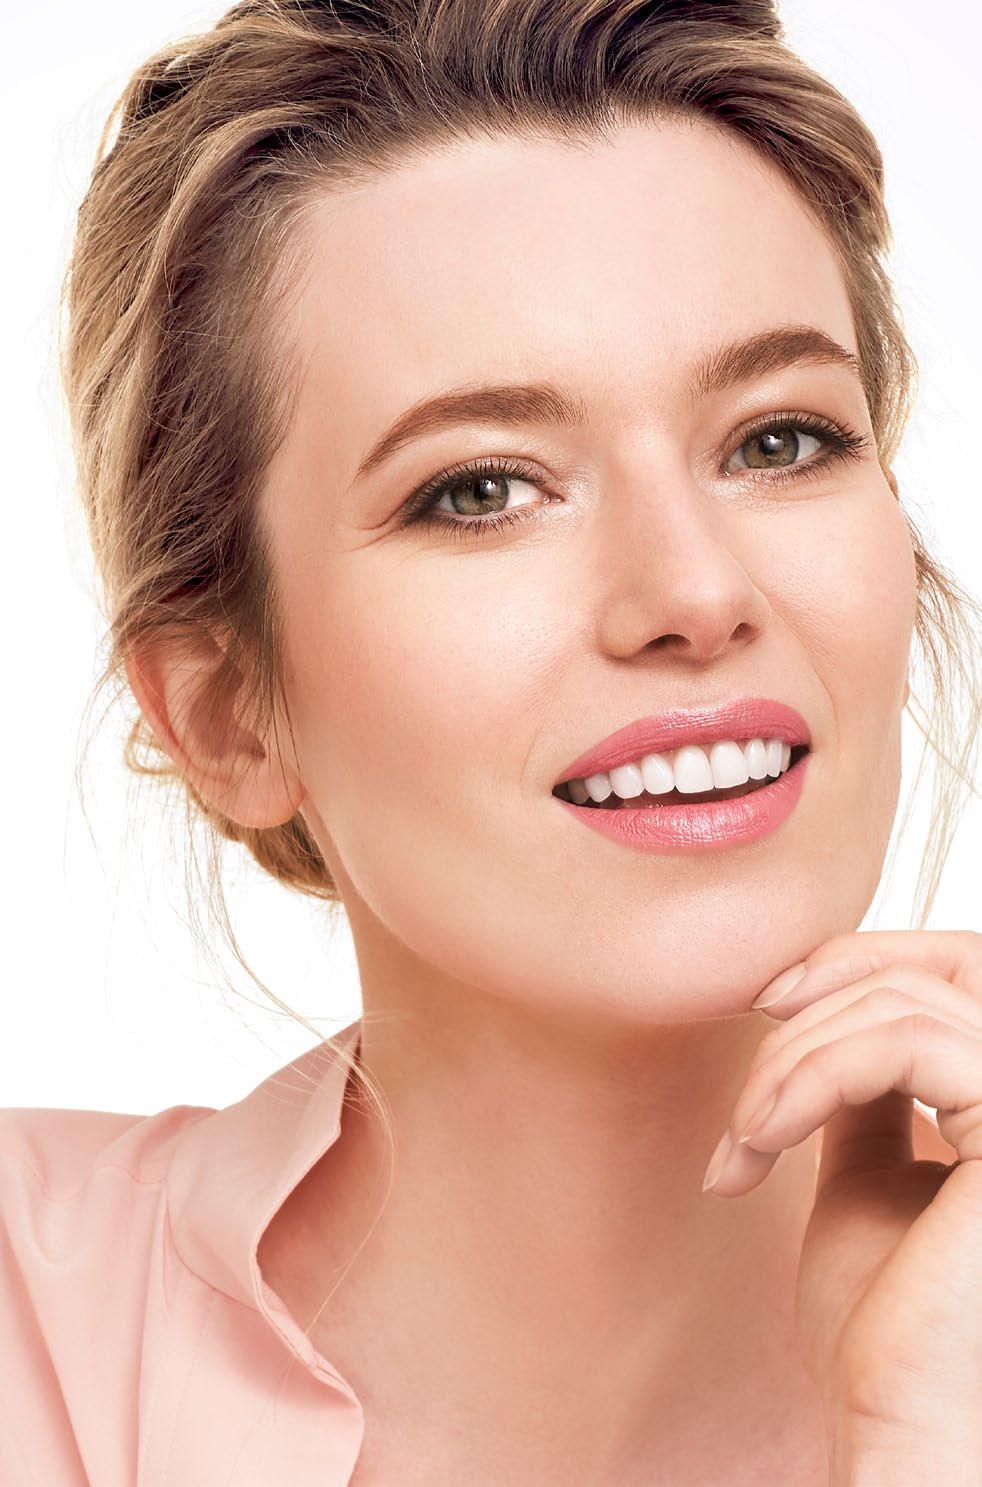 Zestaw do pielęgnacji twarzy Swedish Spa Pure Breeze Zestaw kosmetyków do głębokiego oczyszczenia skóry.